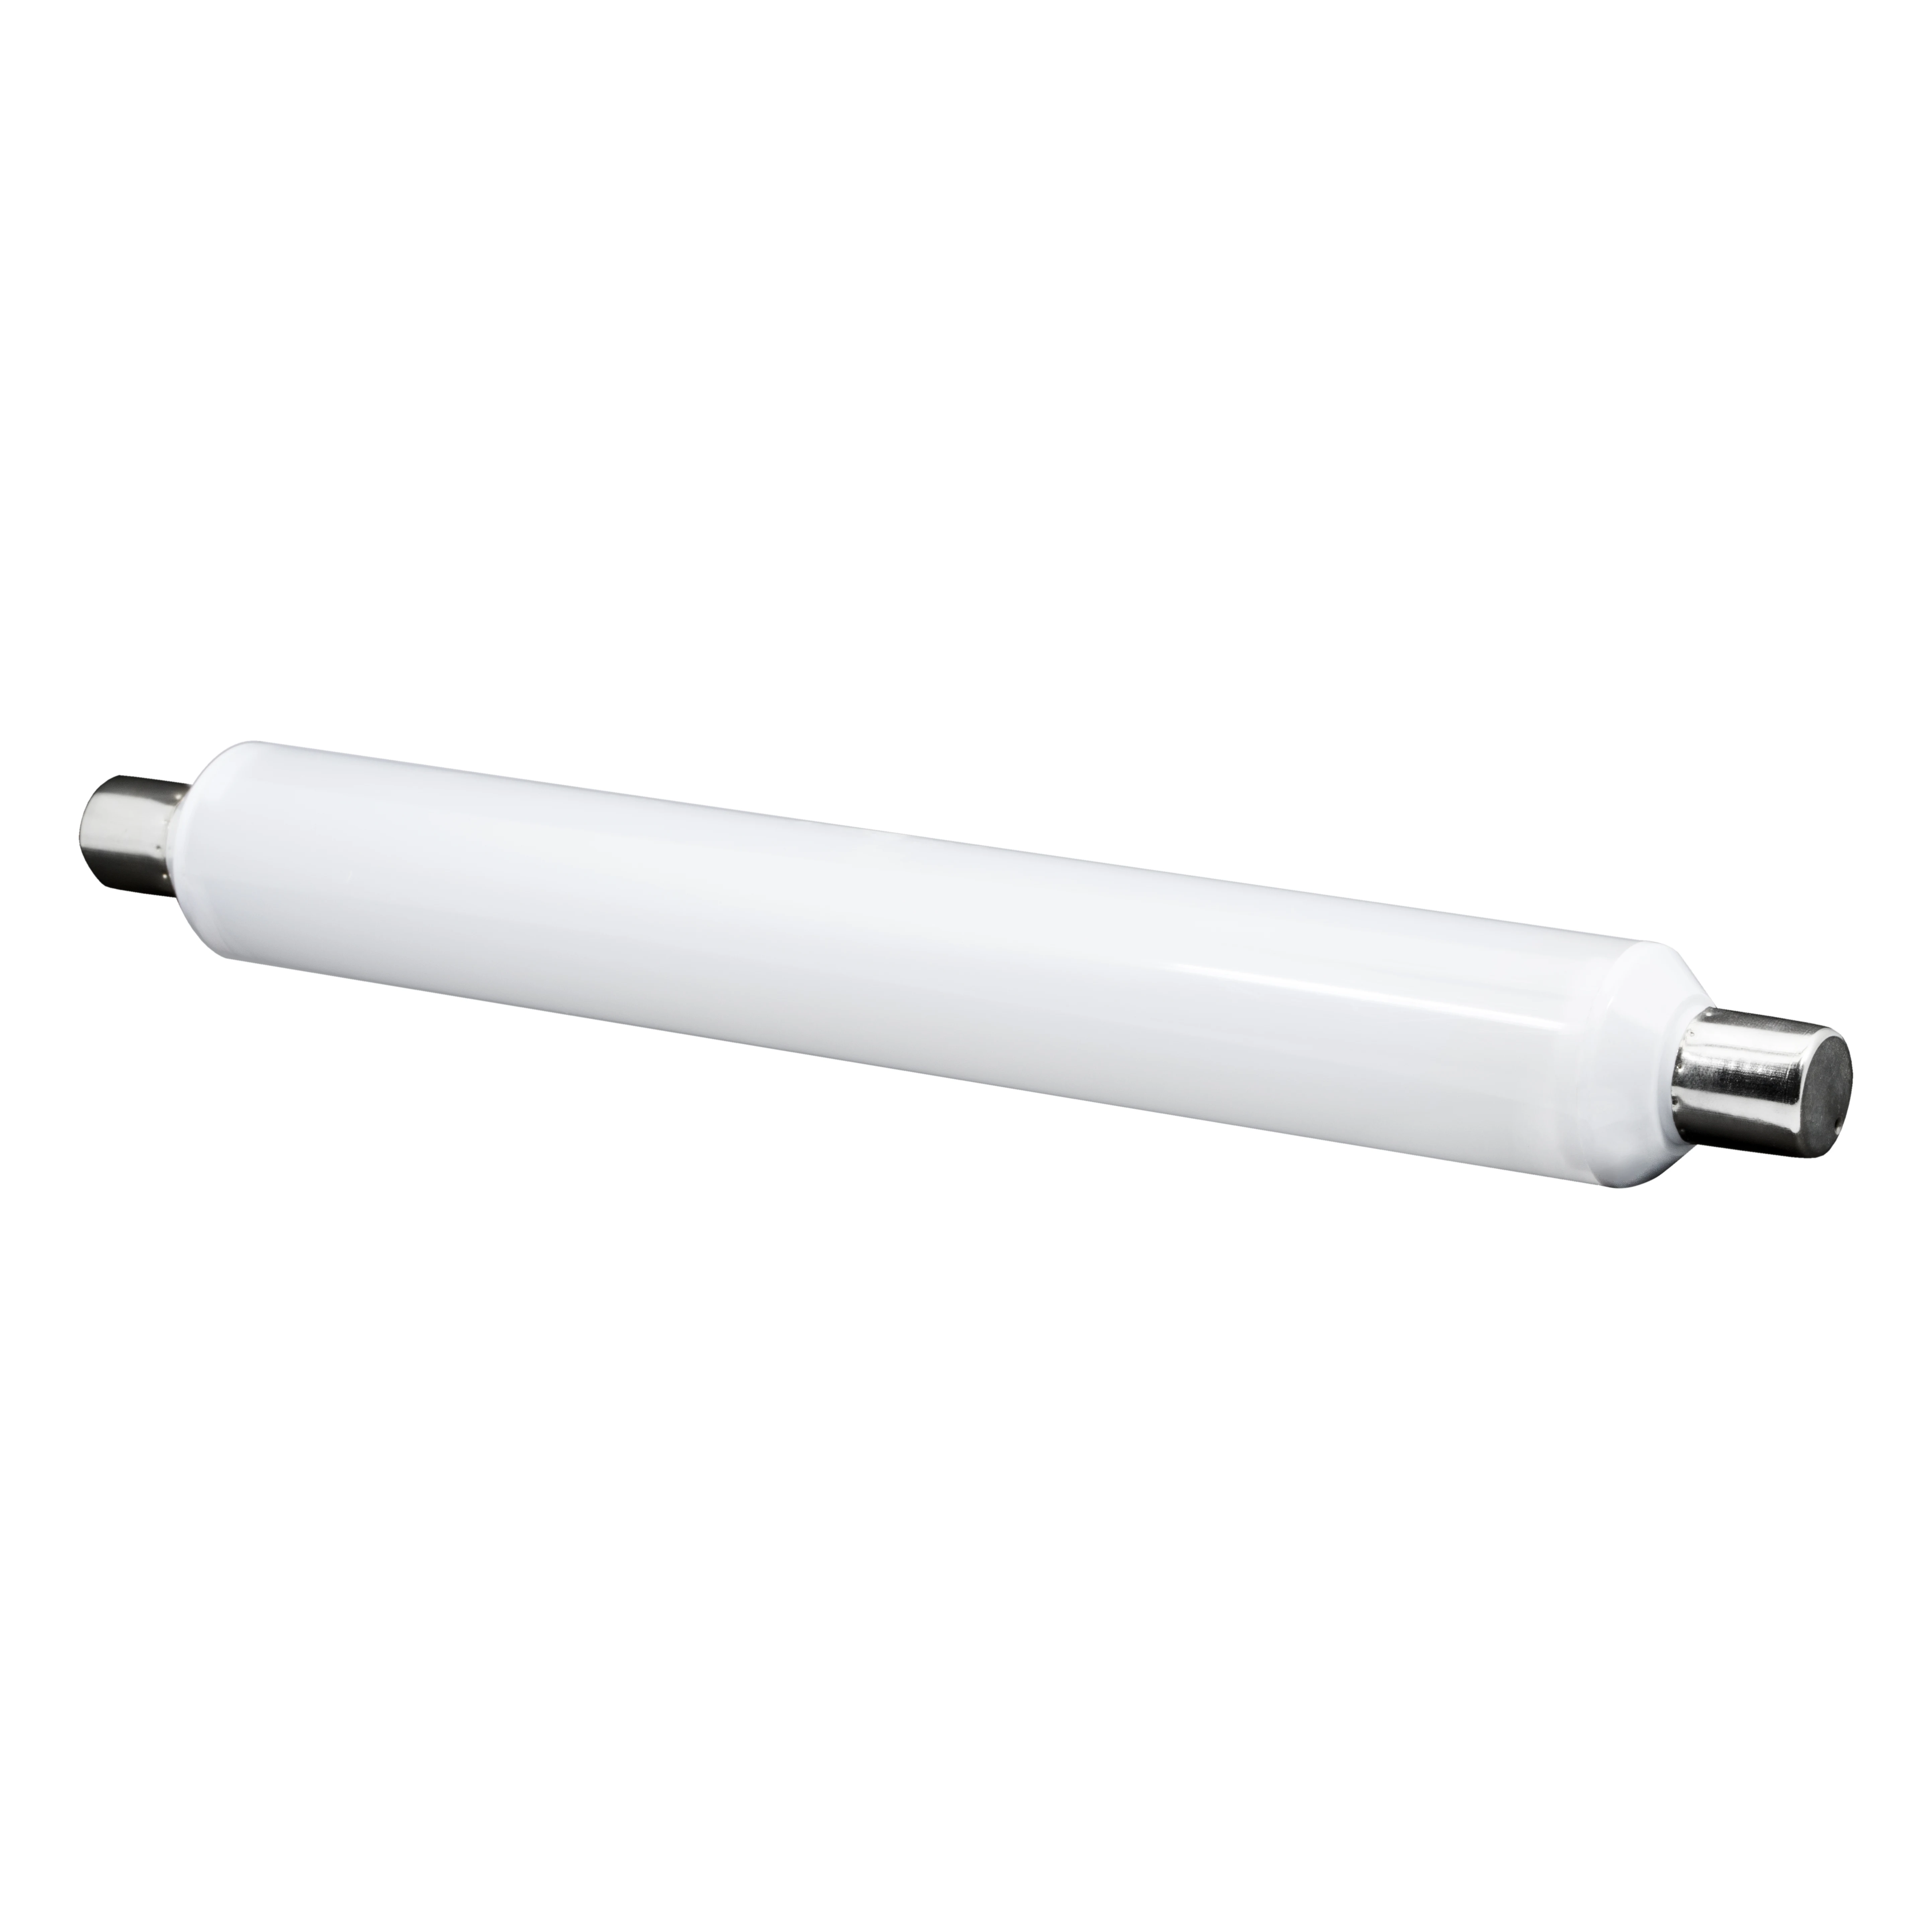 S19 6W 8W led tube cabinet light linear tube CE certificate LED light